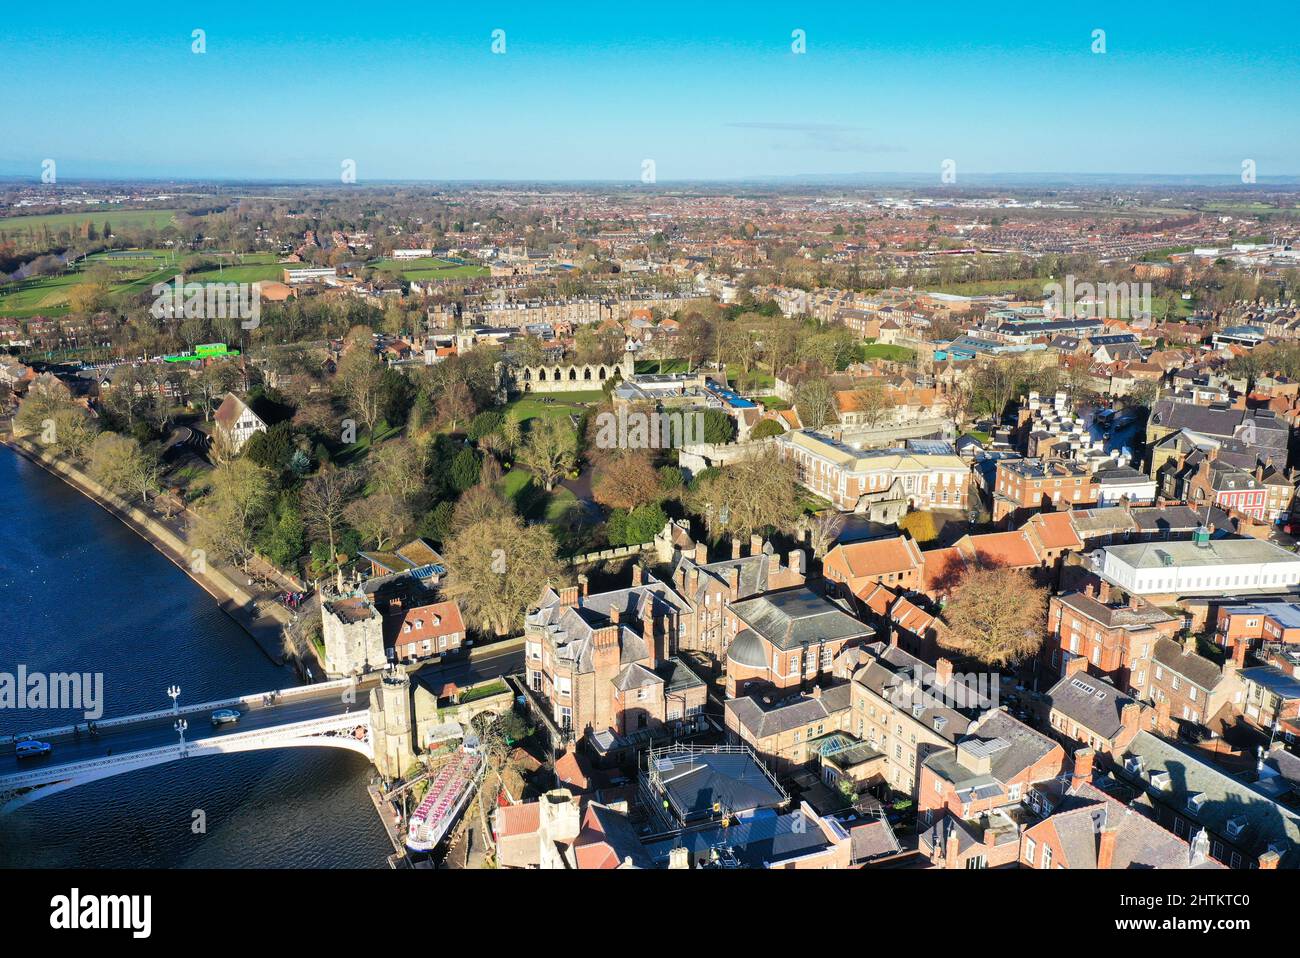 Vue aérienne de York par drone Banque D'Images